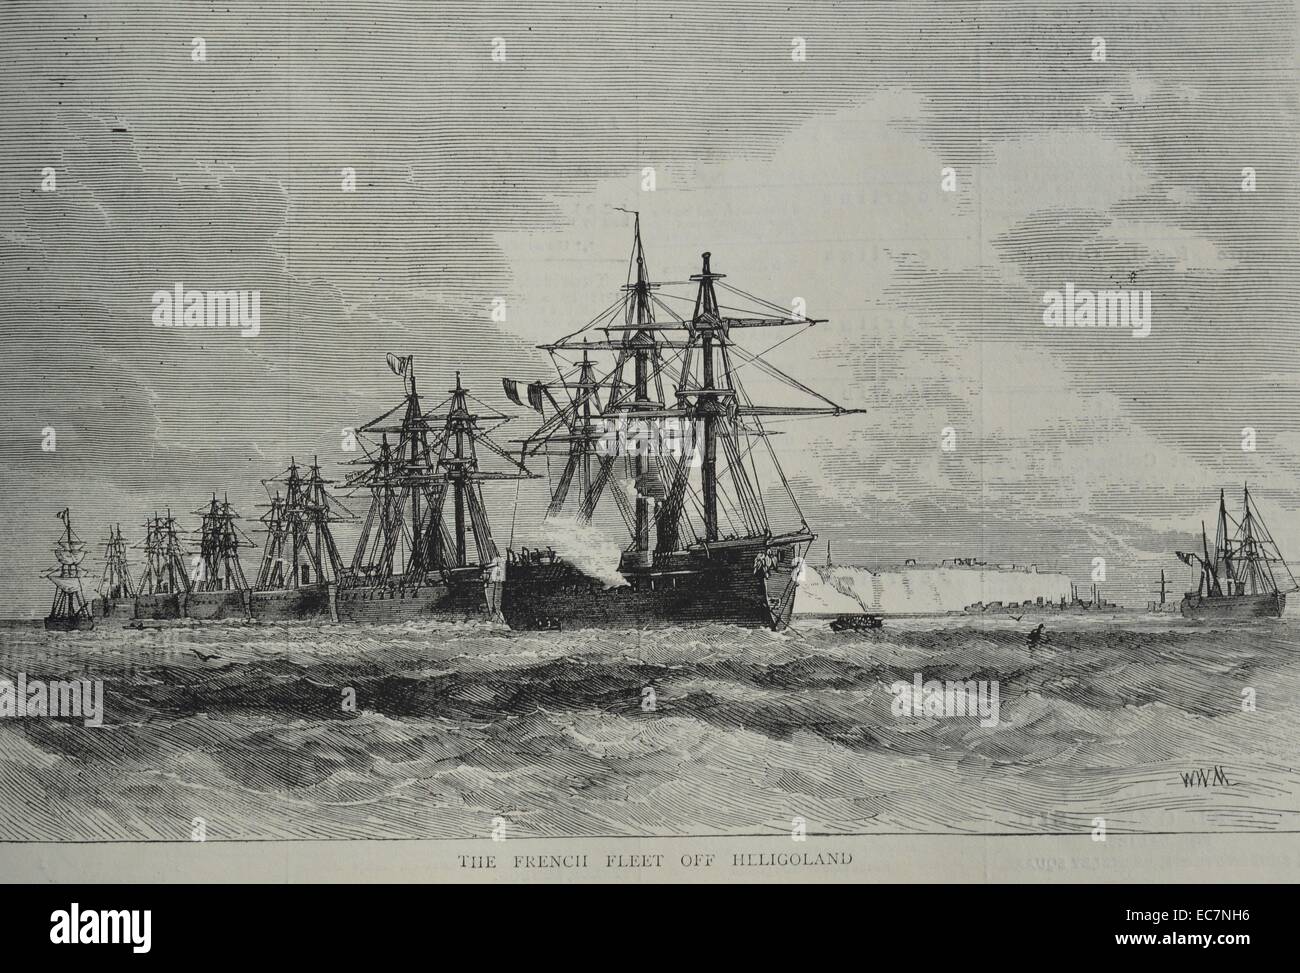 Gravur der französischen Flotte aus Helgoland, einem kleinen deutschen Archipel in der Nordsee. Vom 1870 Stockfoto